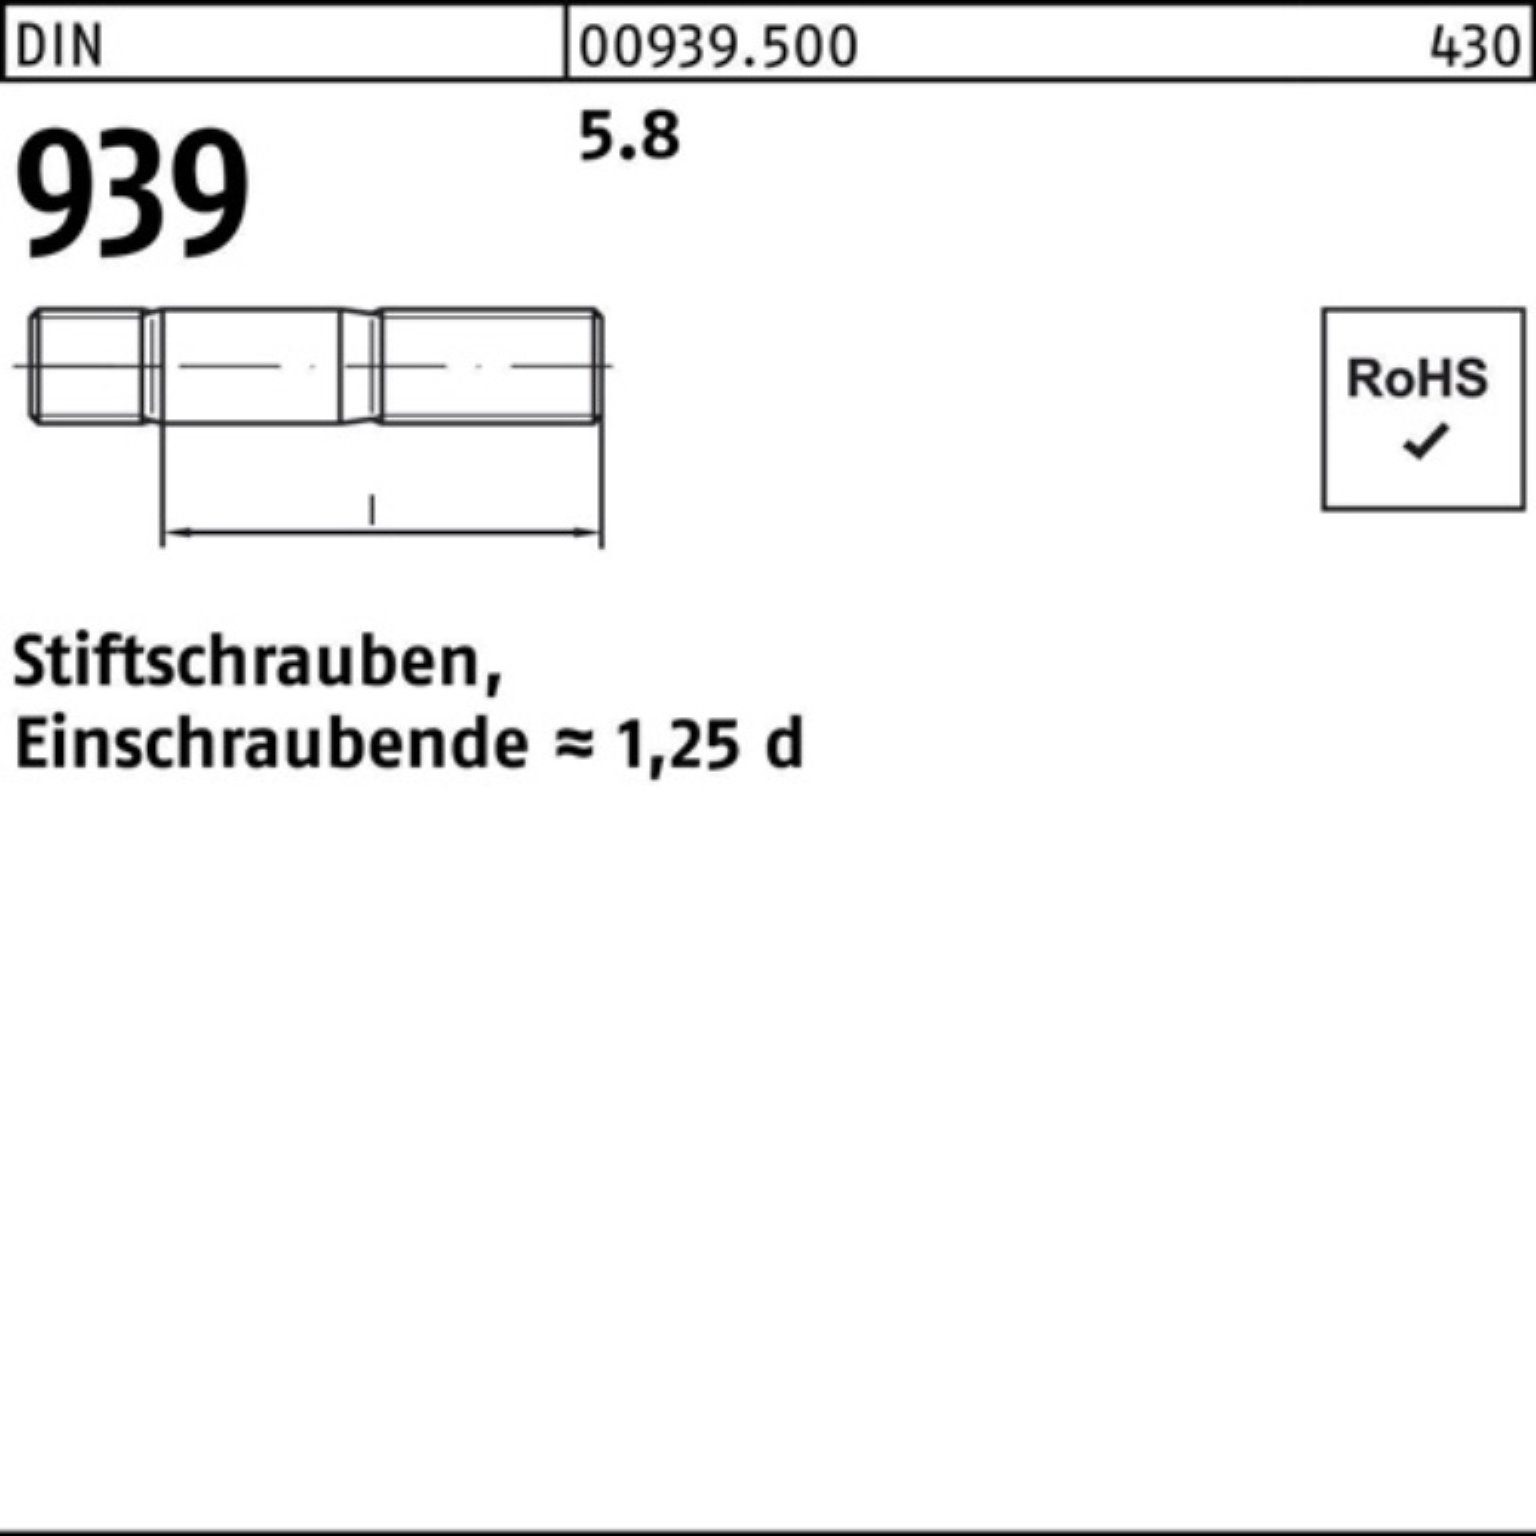 50 Reyher M14x 5.8 Pack Stiftschraube 100er Einschraubende=1,25d 30 DIN S Stiftschraube 939